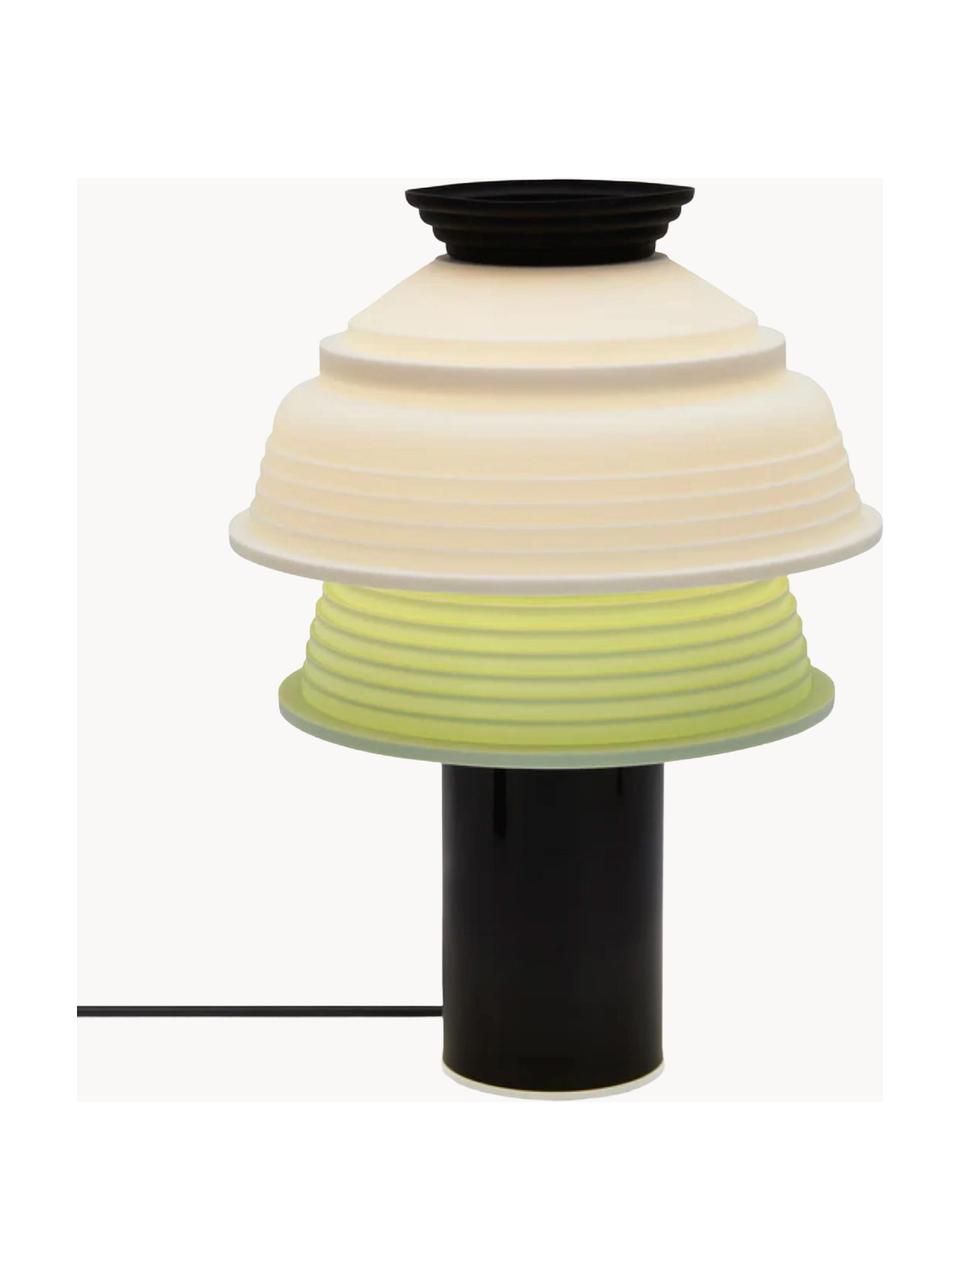 Lampada da tavolo piccola TL4, Paralume: silicone, Struttura: metallo rivestito, Nero, bianco, verde chiaro, Ø 26 x Alt. 25 cm